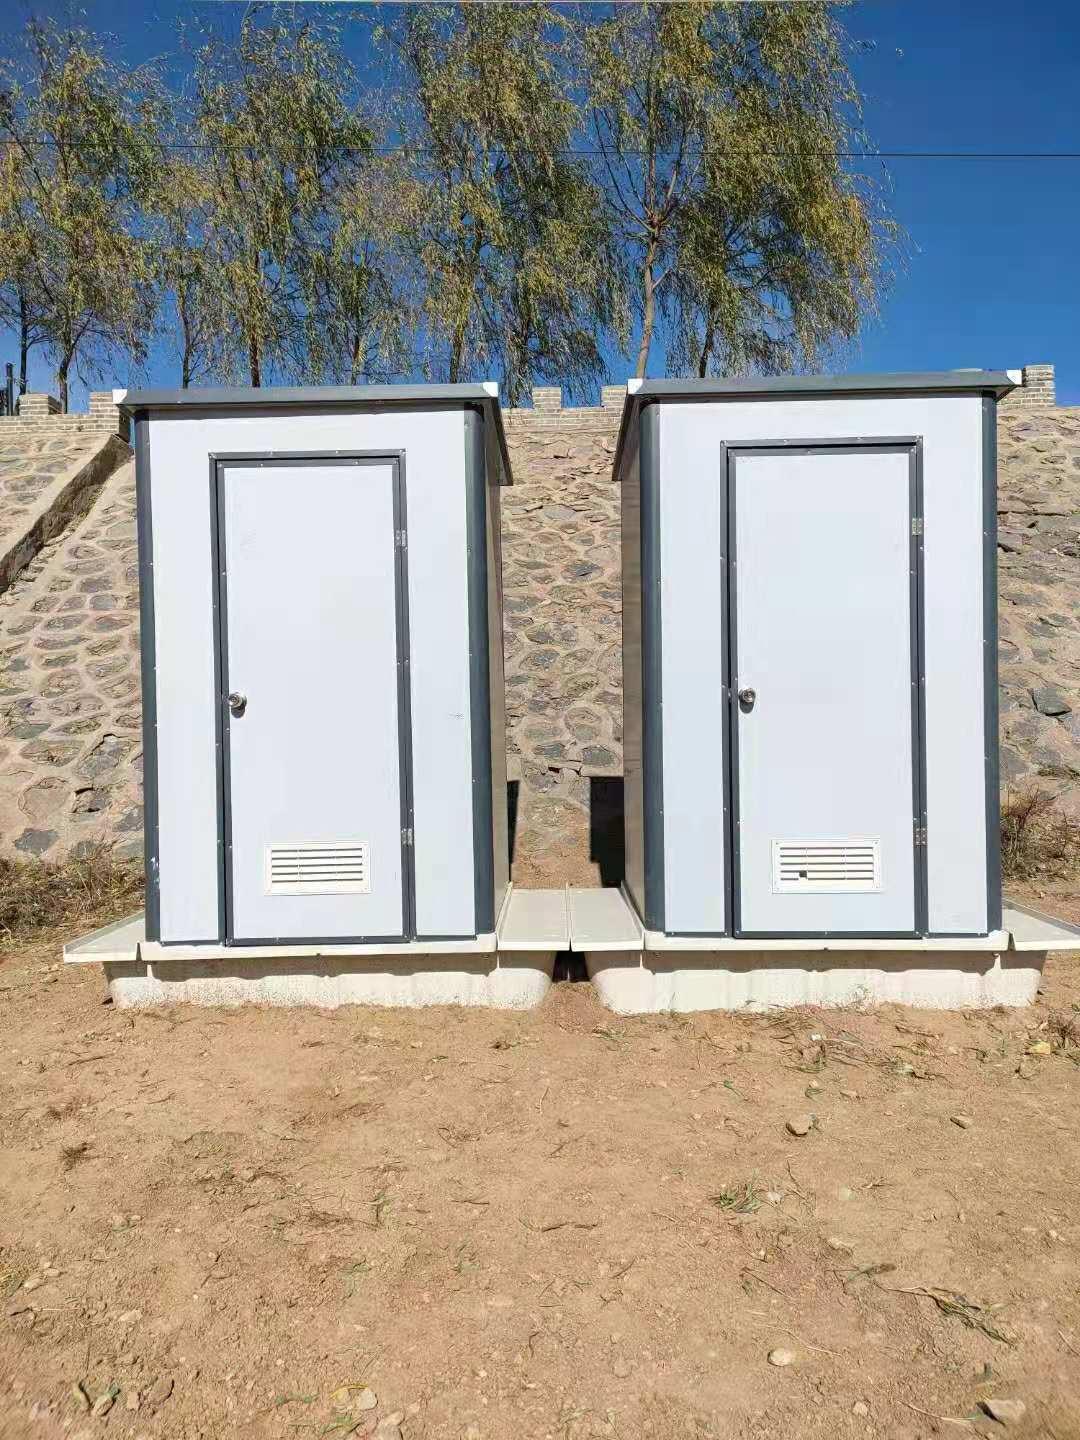 彩钢厕屋 移动式卫生间简易移动厕所农村厕改用泡沫板